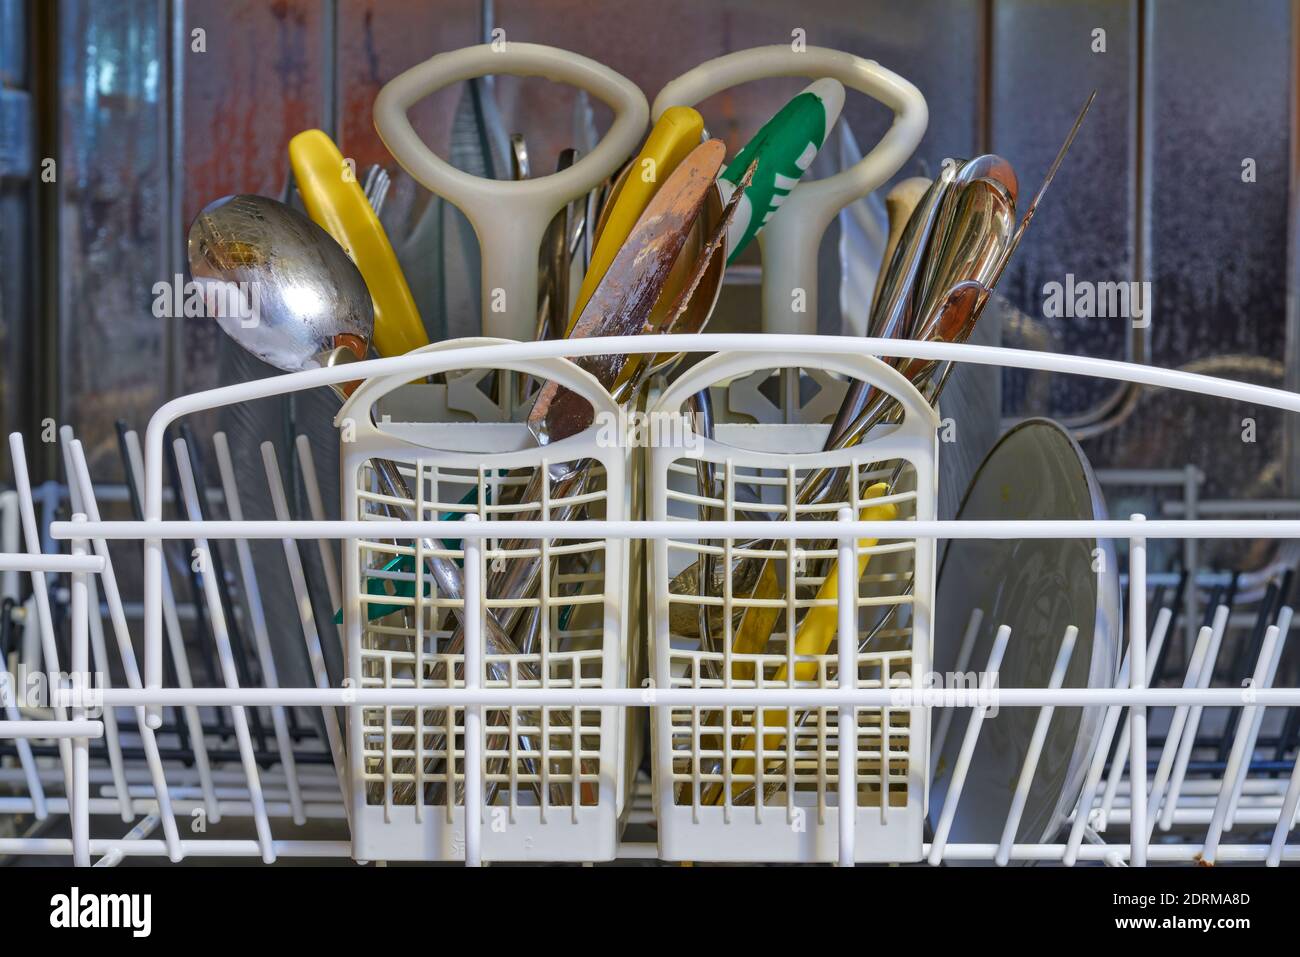 piastre, forcelle, cucchiai e coltelli sporchi in lavastoviglie in acciaio inox Foto Stock